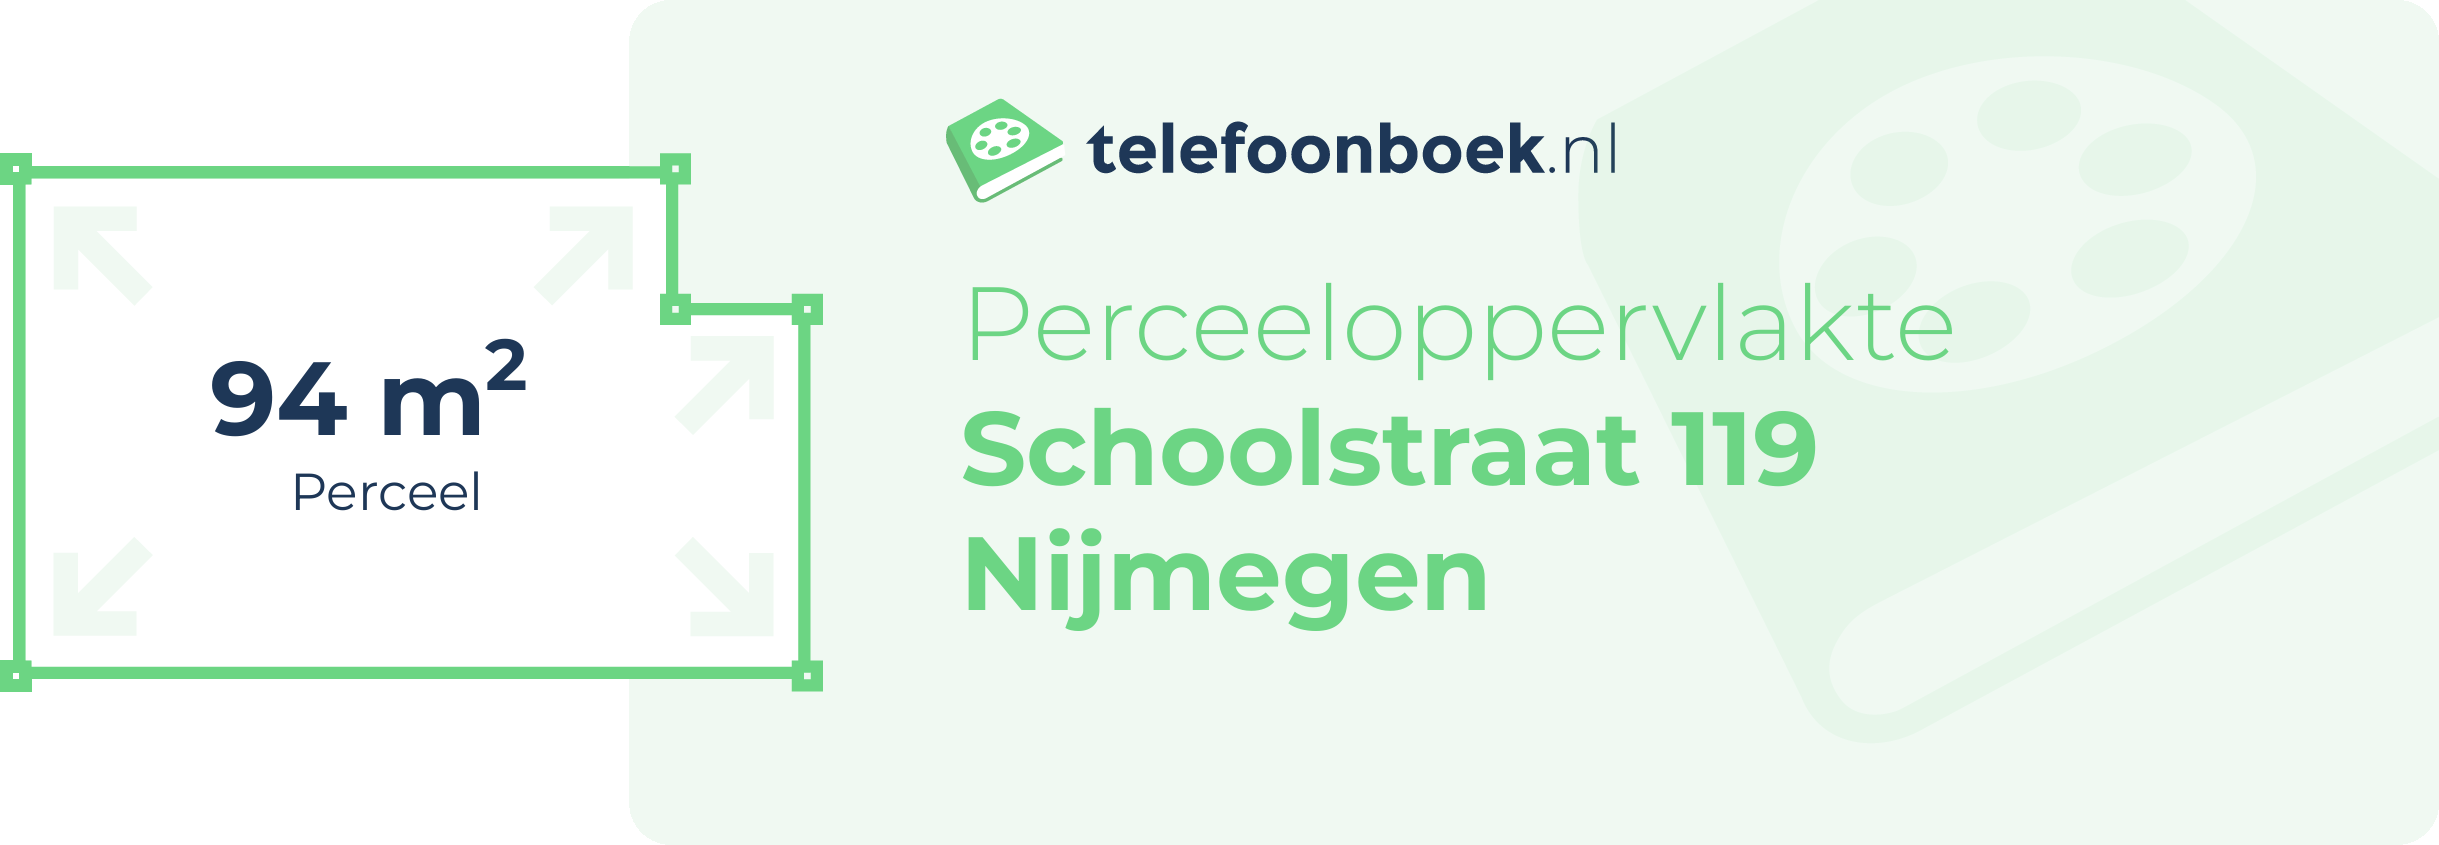 Perceeloppervlakte Schoolstraat 119 Nijmegen